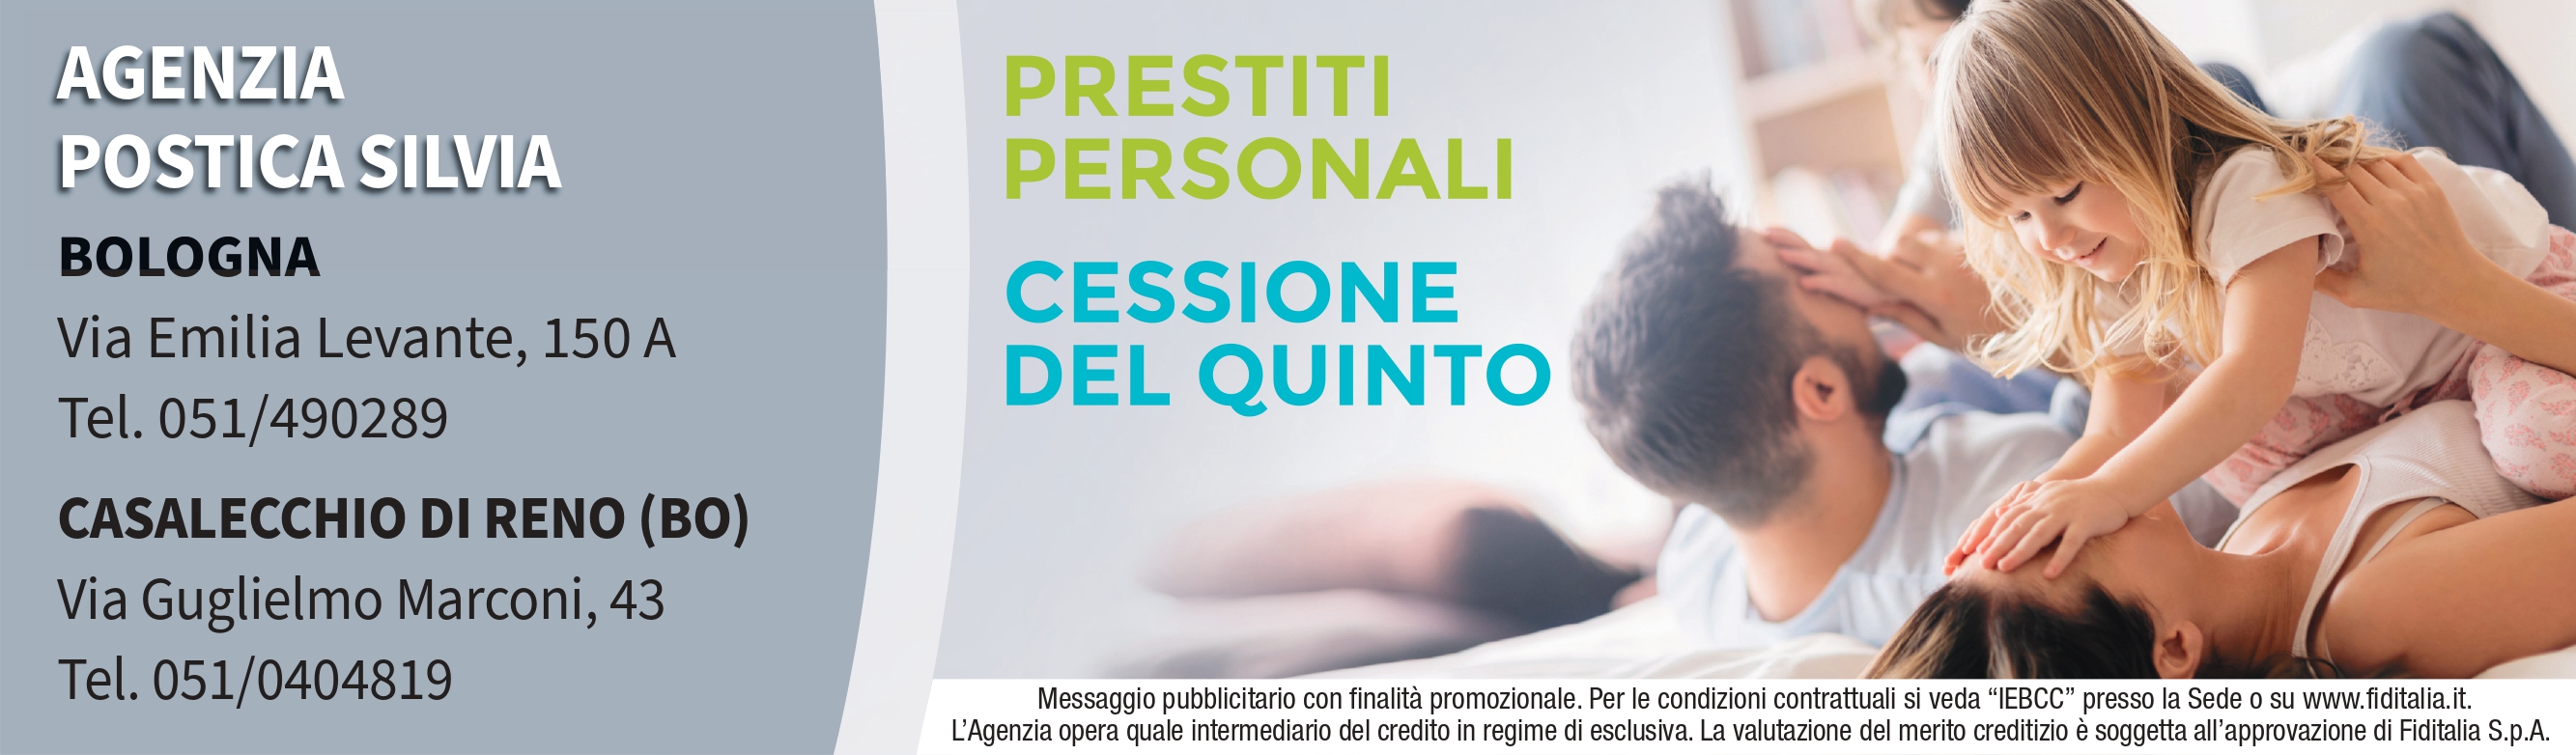 Contatti Agenzia Postica Silvia filiali Fiditalia - Prestiti personali, Cessione del quinto